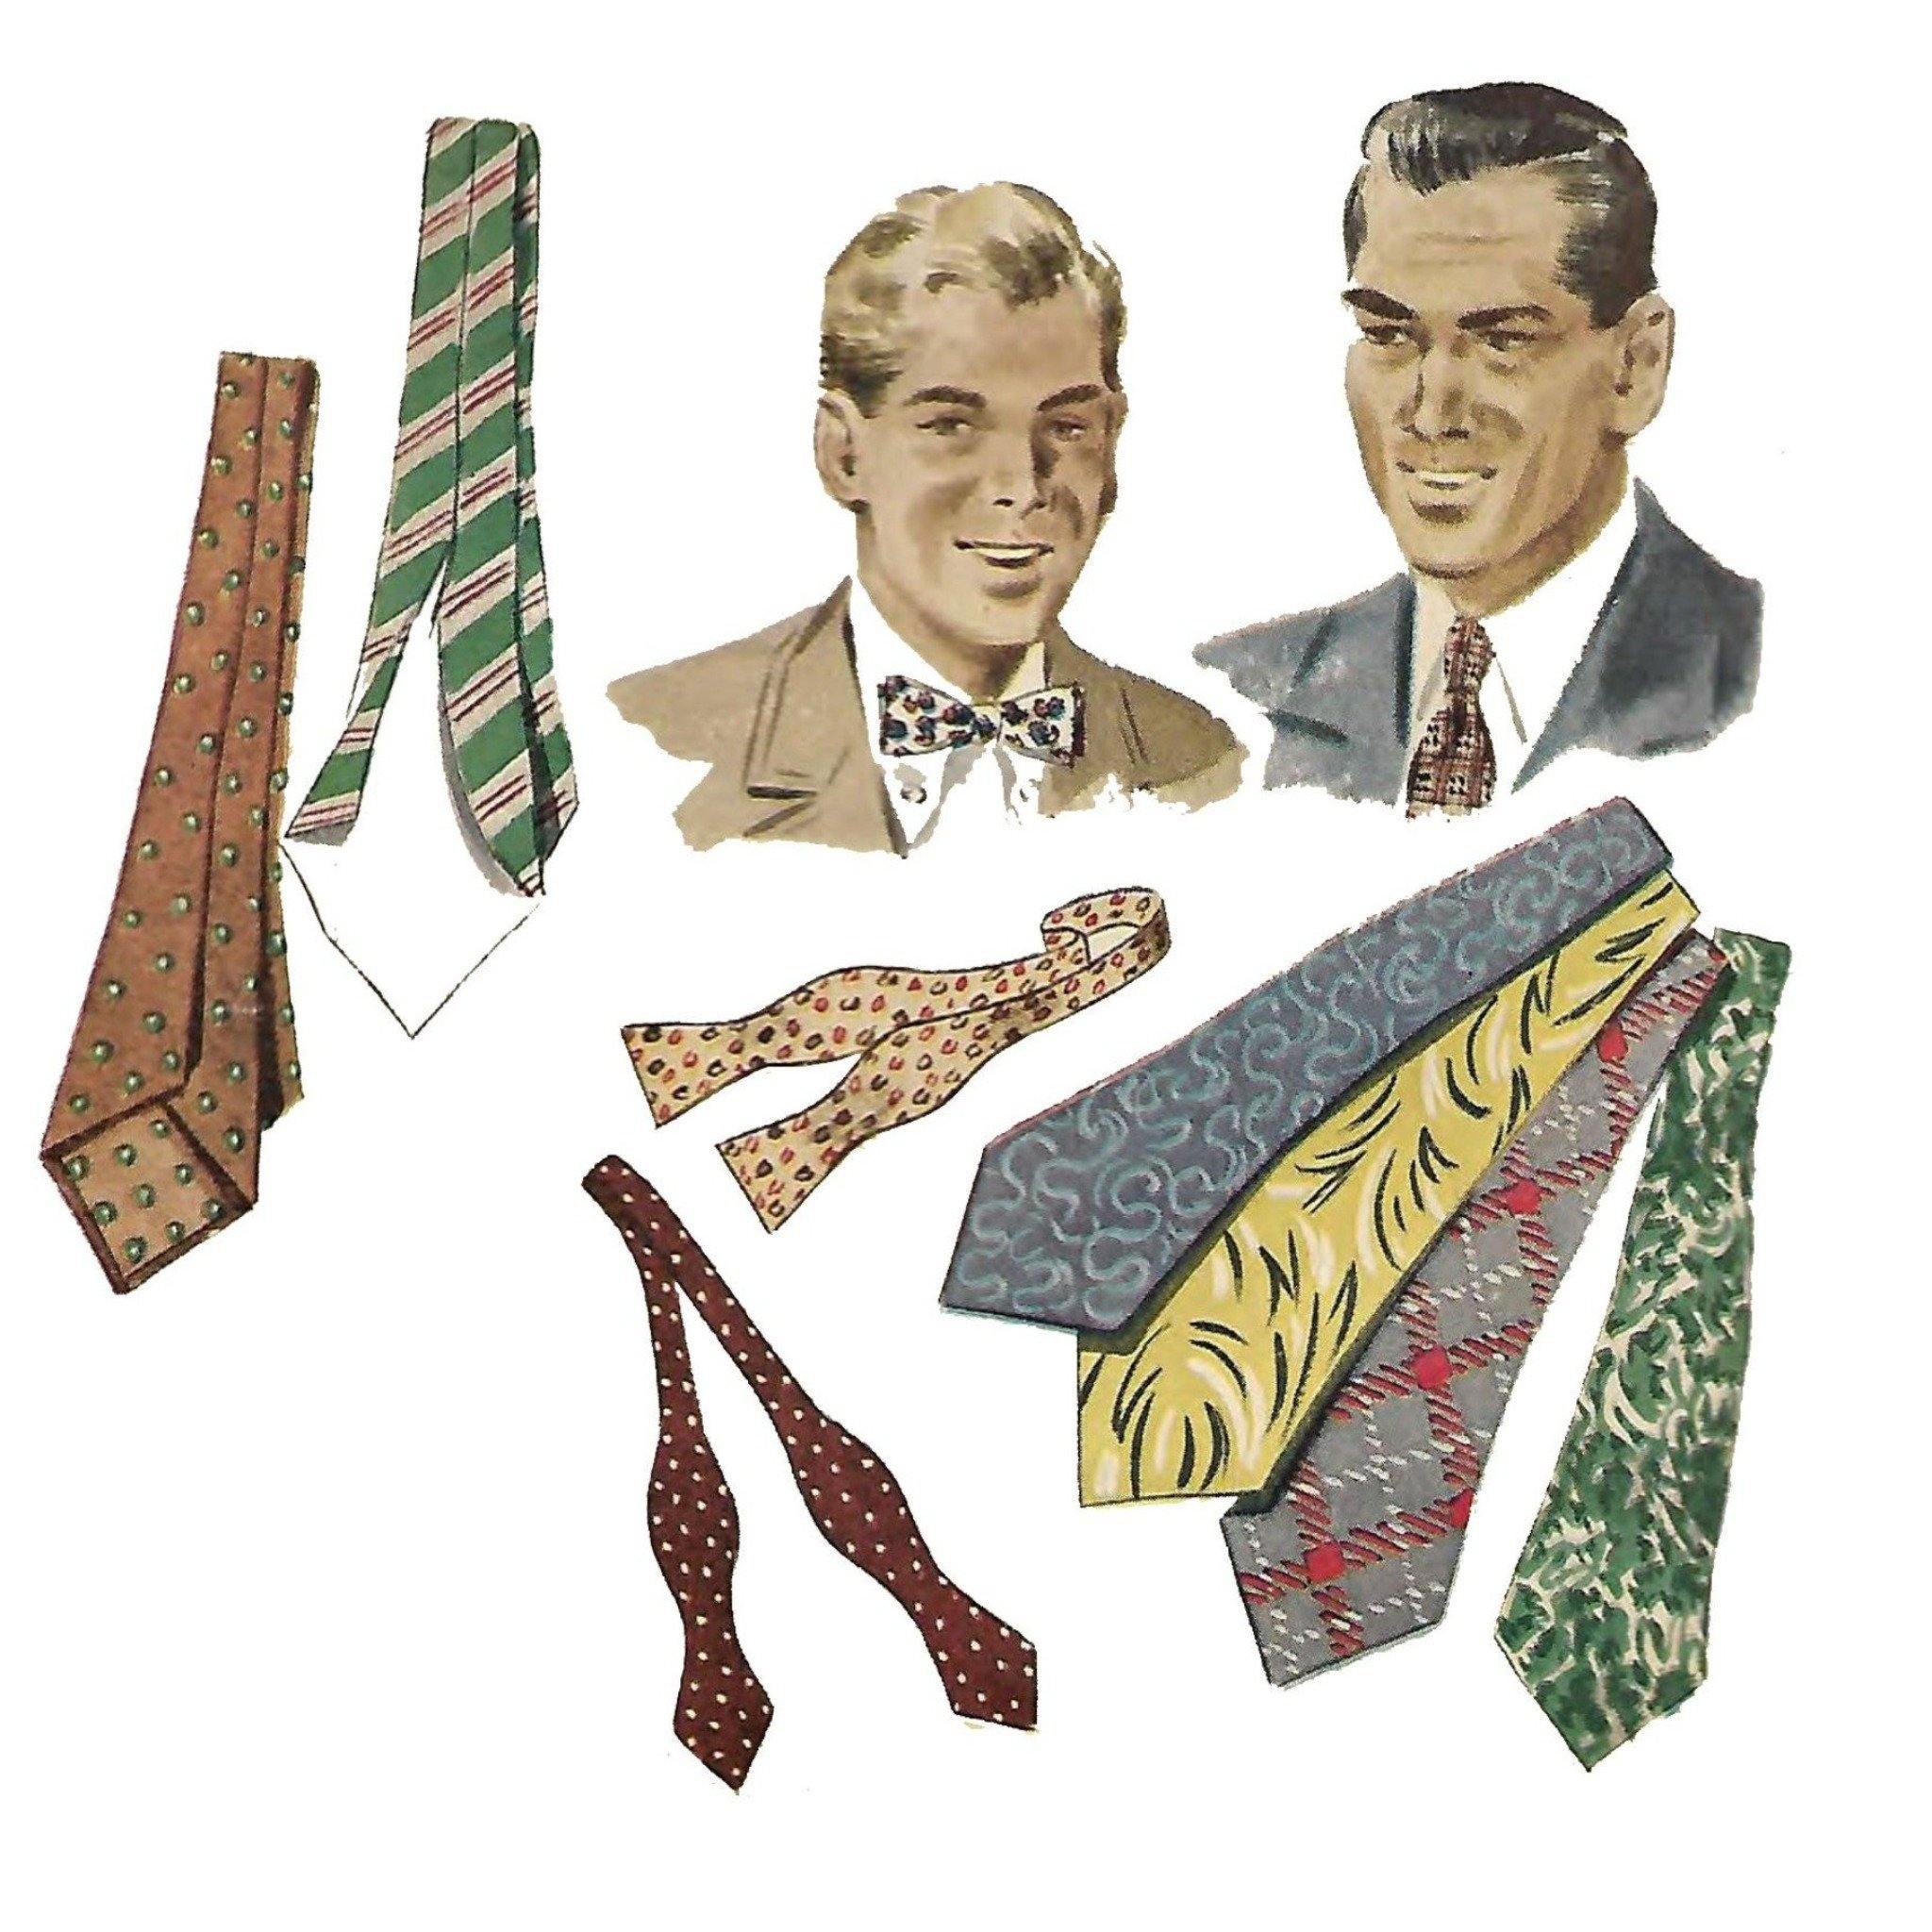 Men's Ties Collection, Neckties & Bow Ties